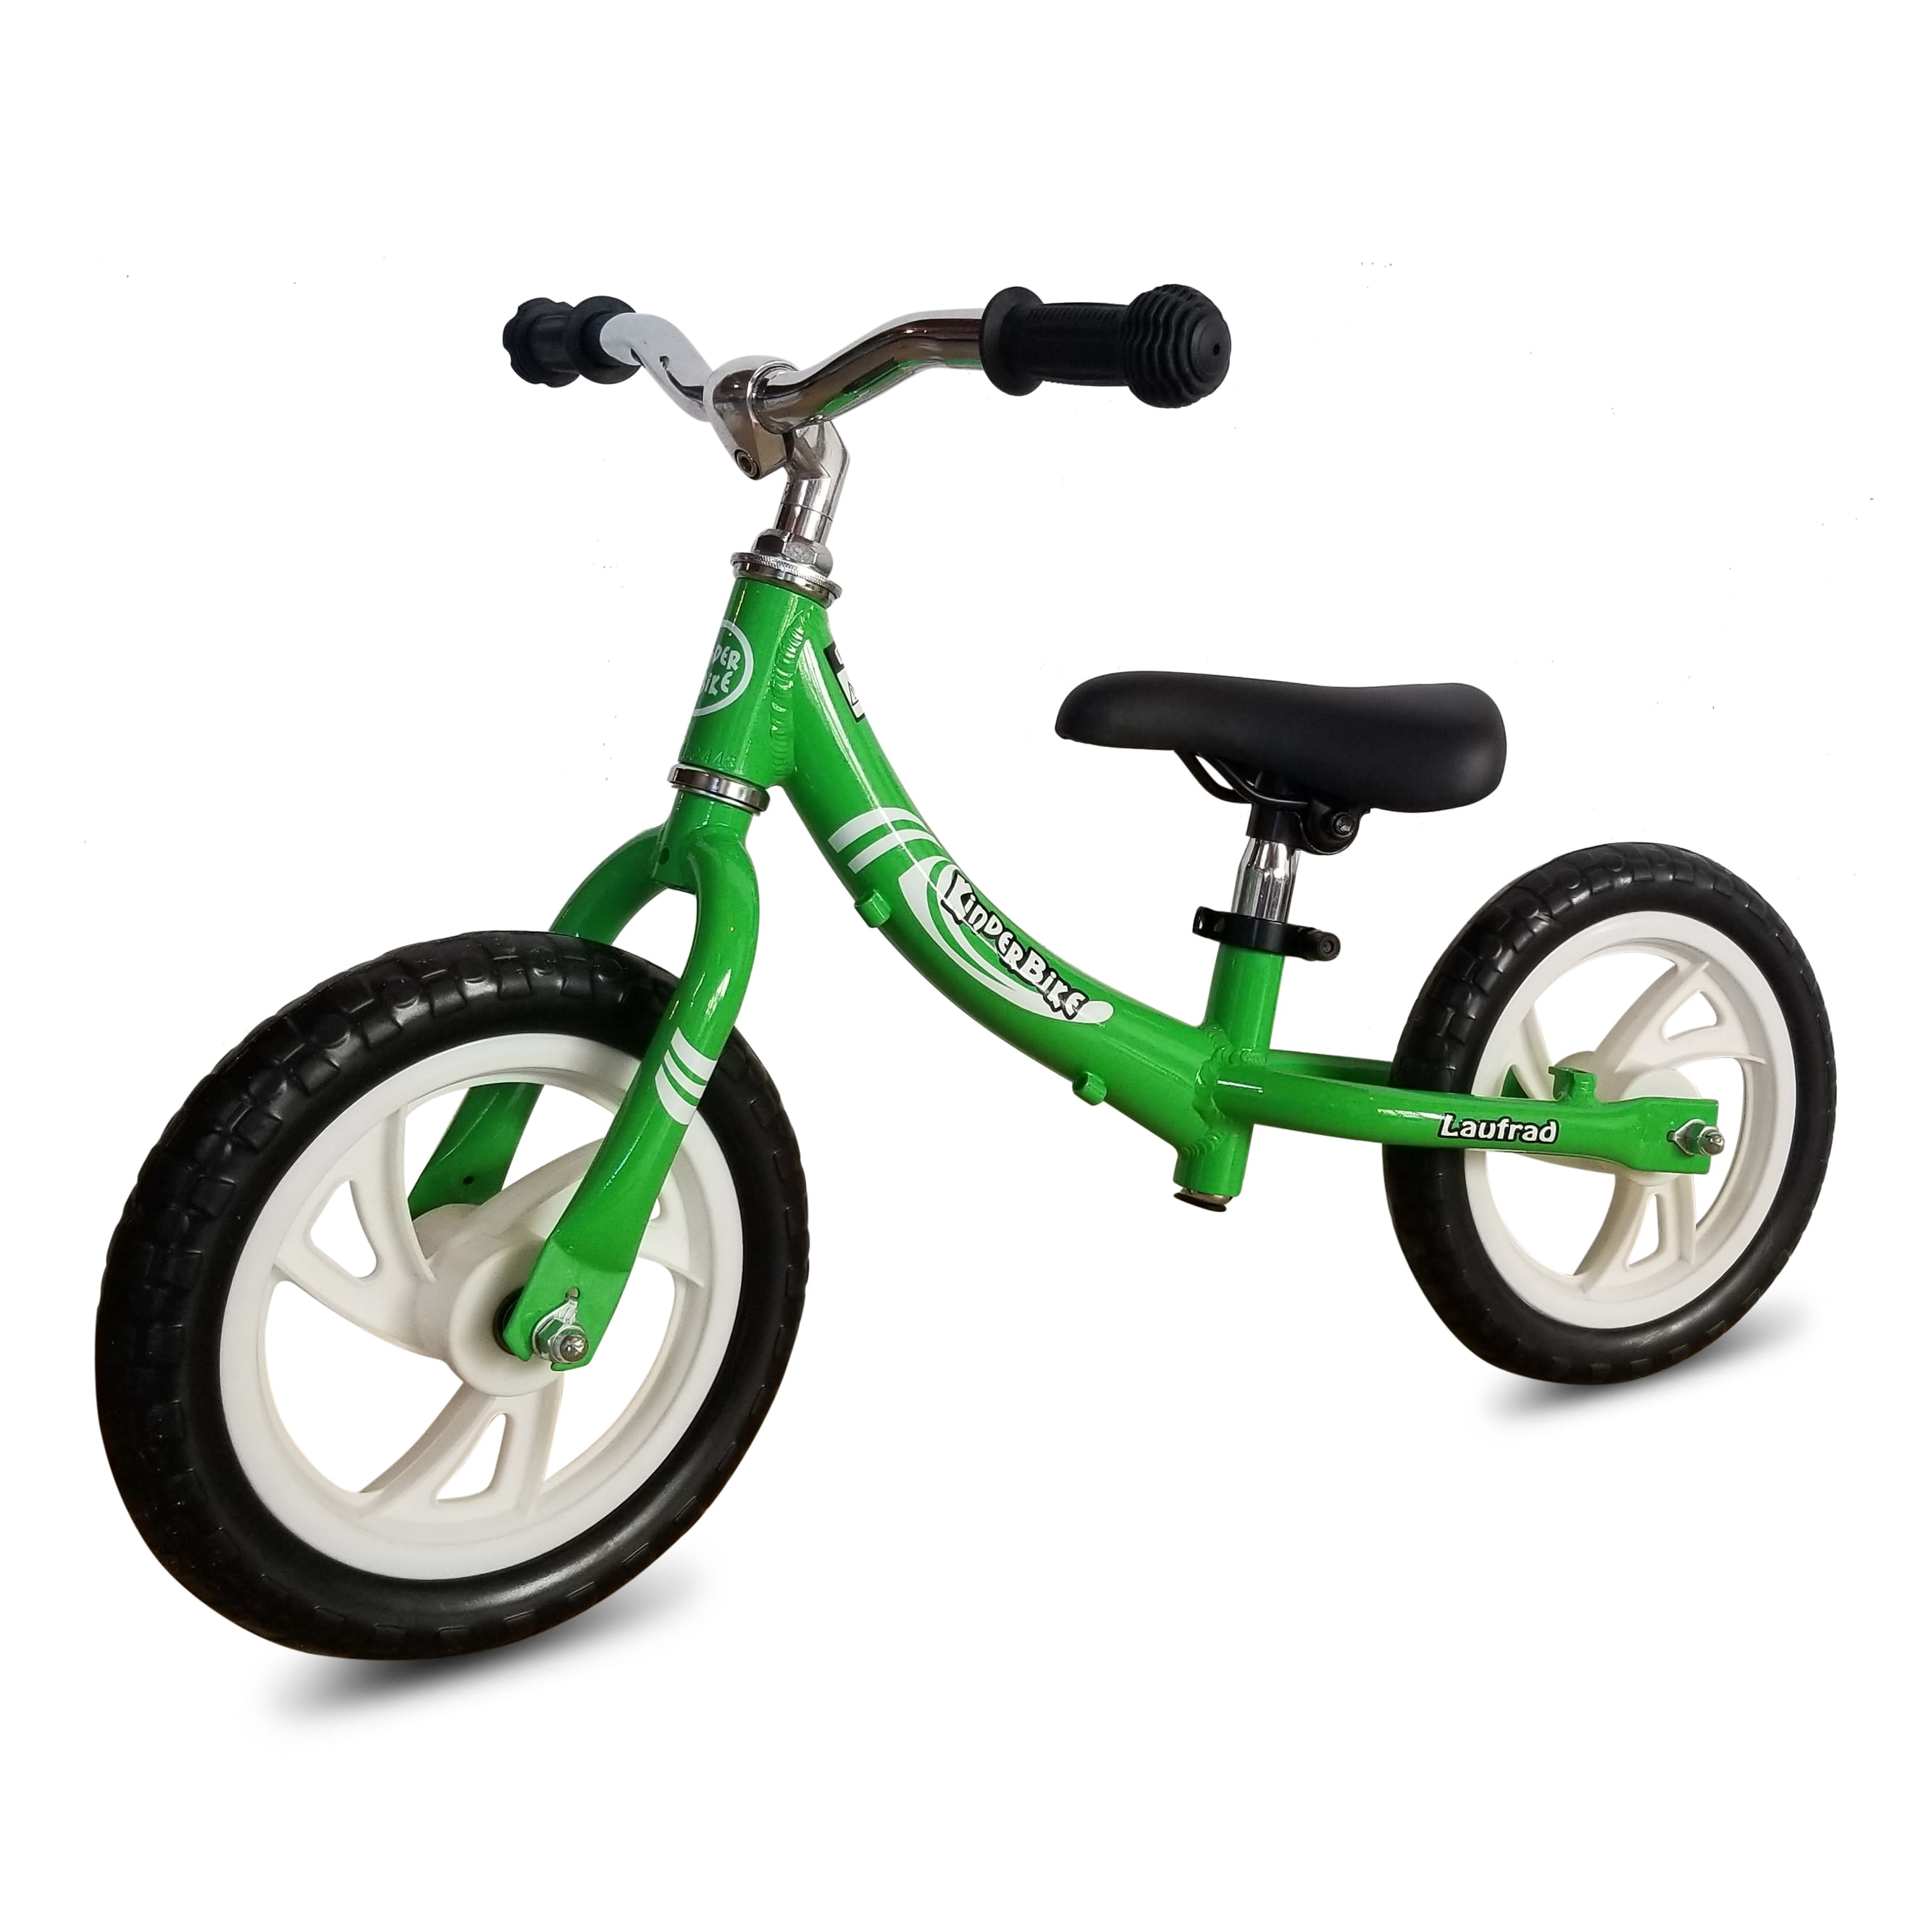 Laufrad Lernlaufrad Balance Bike 12" Kinderlaufrad Kinder Fahrrad Xmas Gift DE 